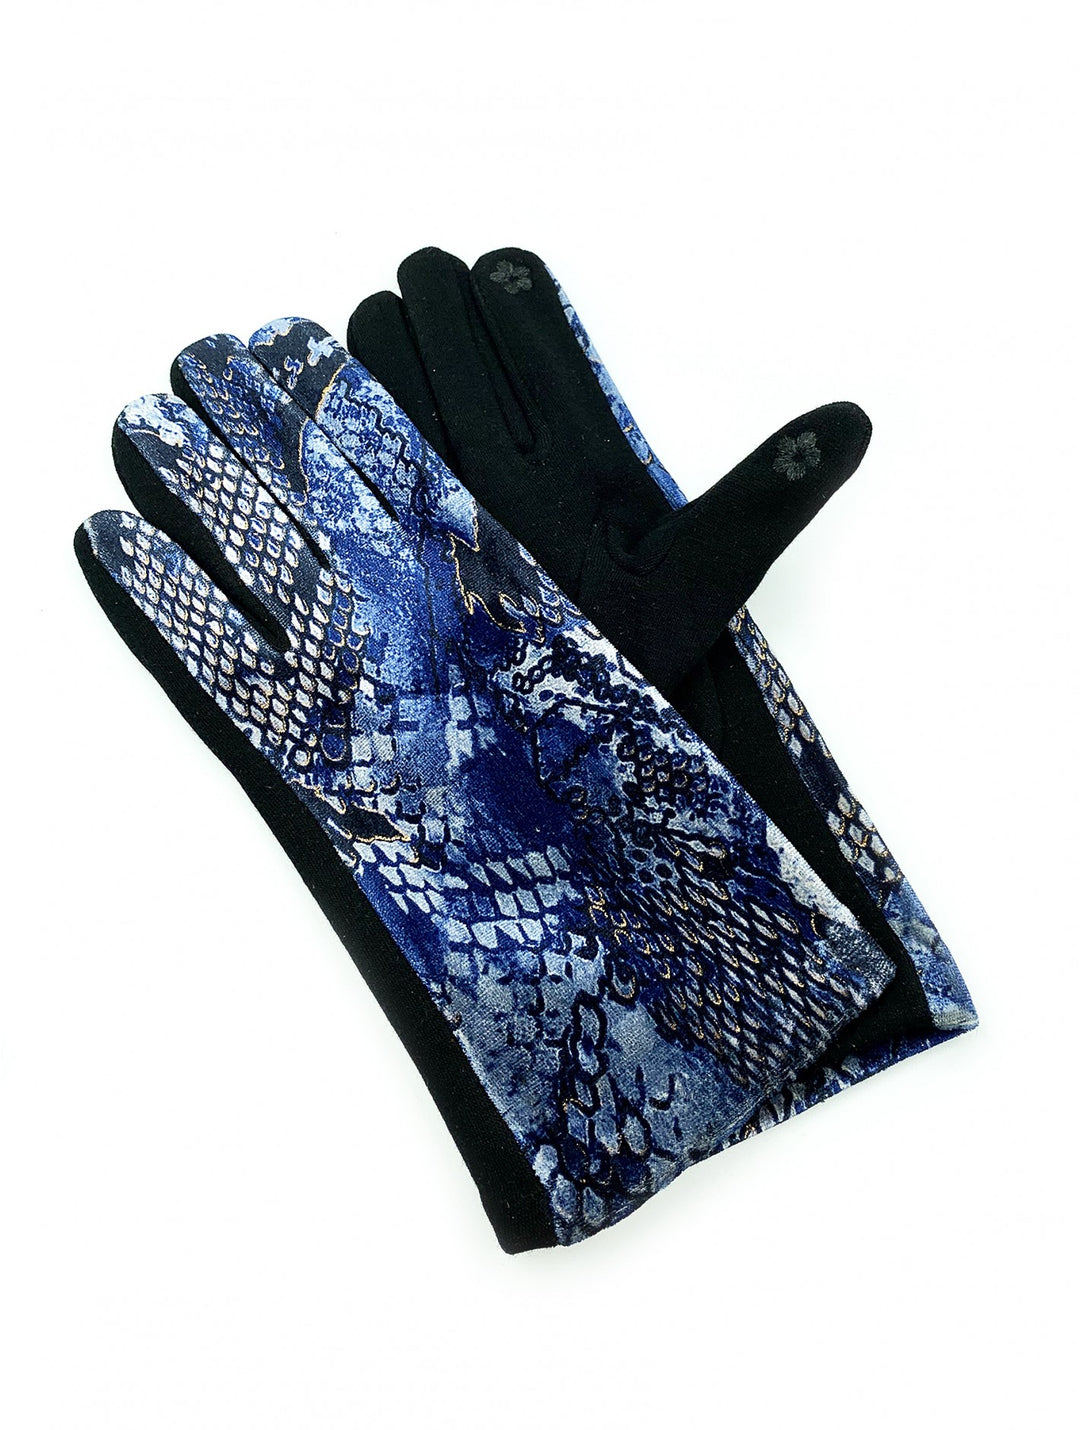 Cherie Bliss Gloves GL1114